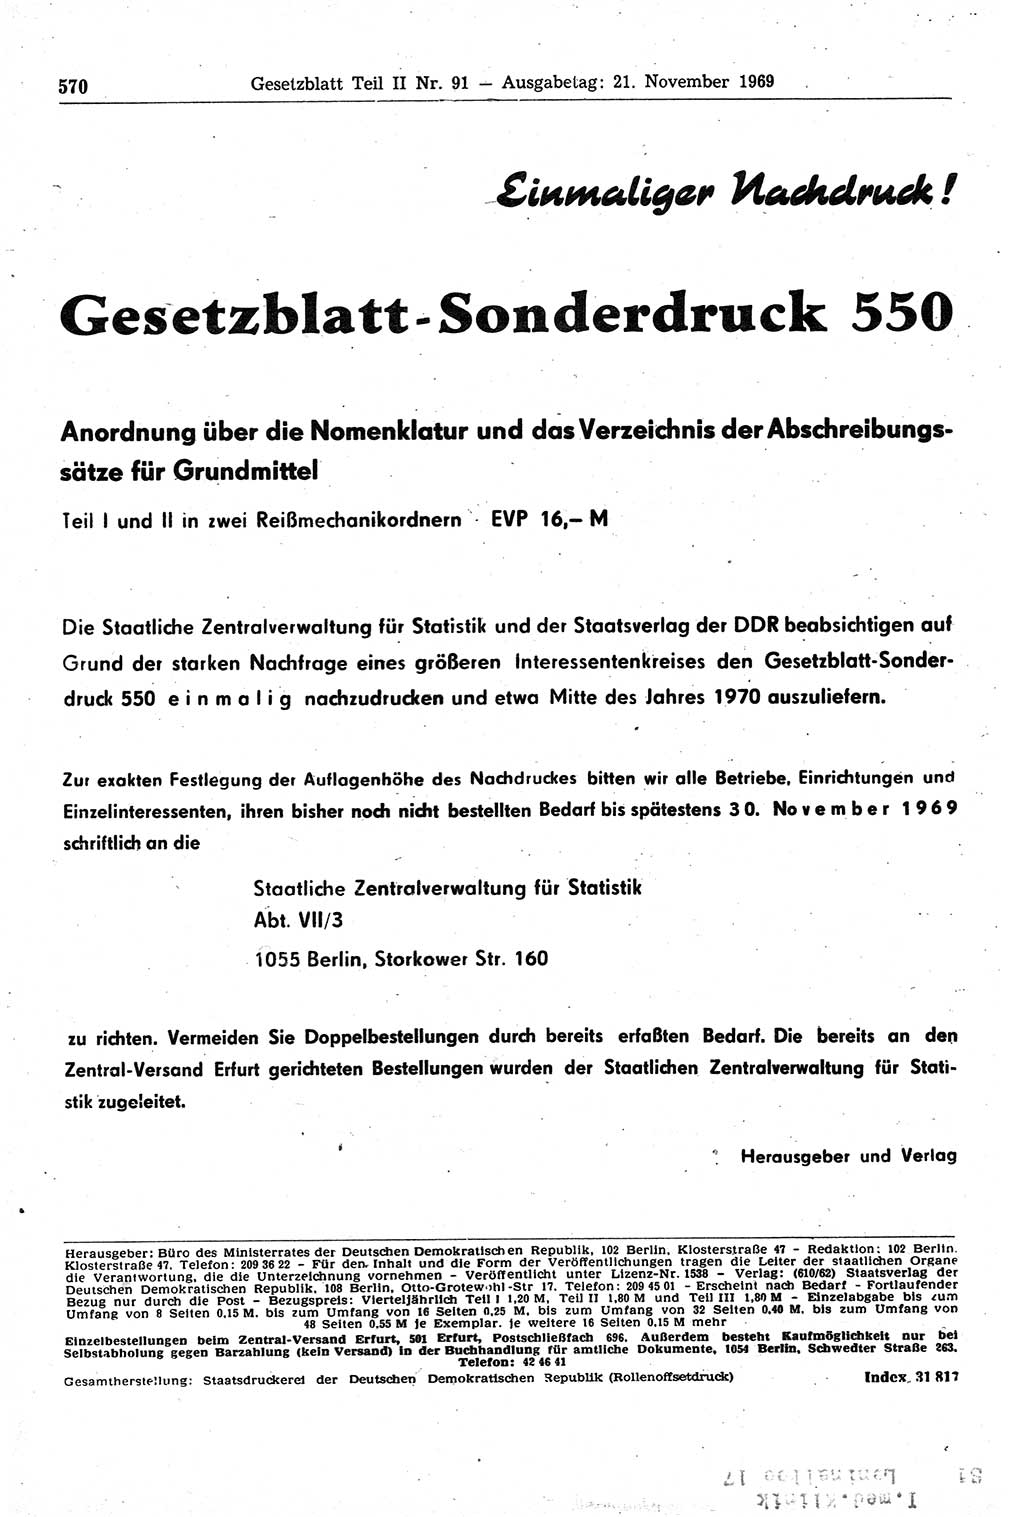 Gesetzblatt (GBl.) der Deutschen Demokratischen Republik (DDR) Teil ⅠⅠ 1969, Seite 570 (GBl. DDR ⅠⅠ 1969, S. 570)